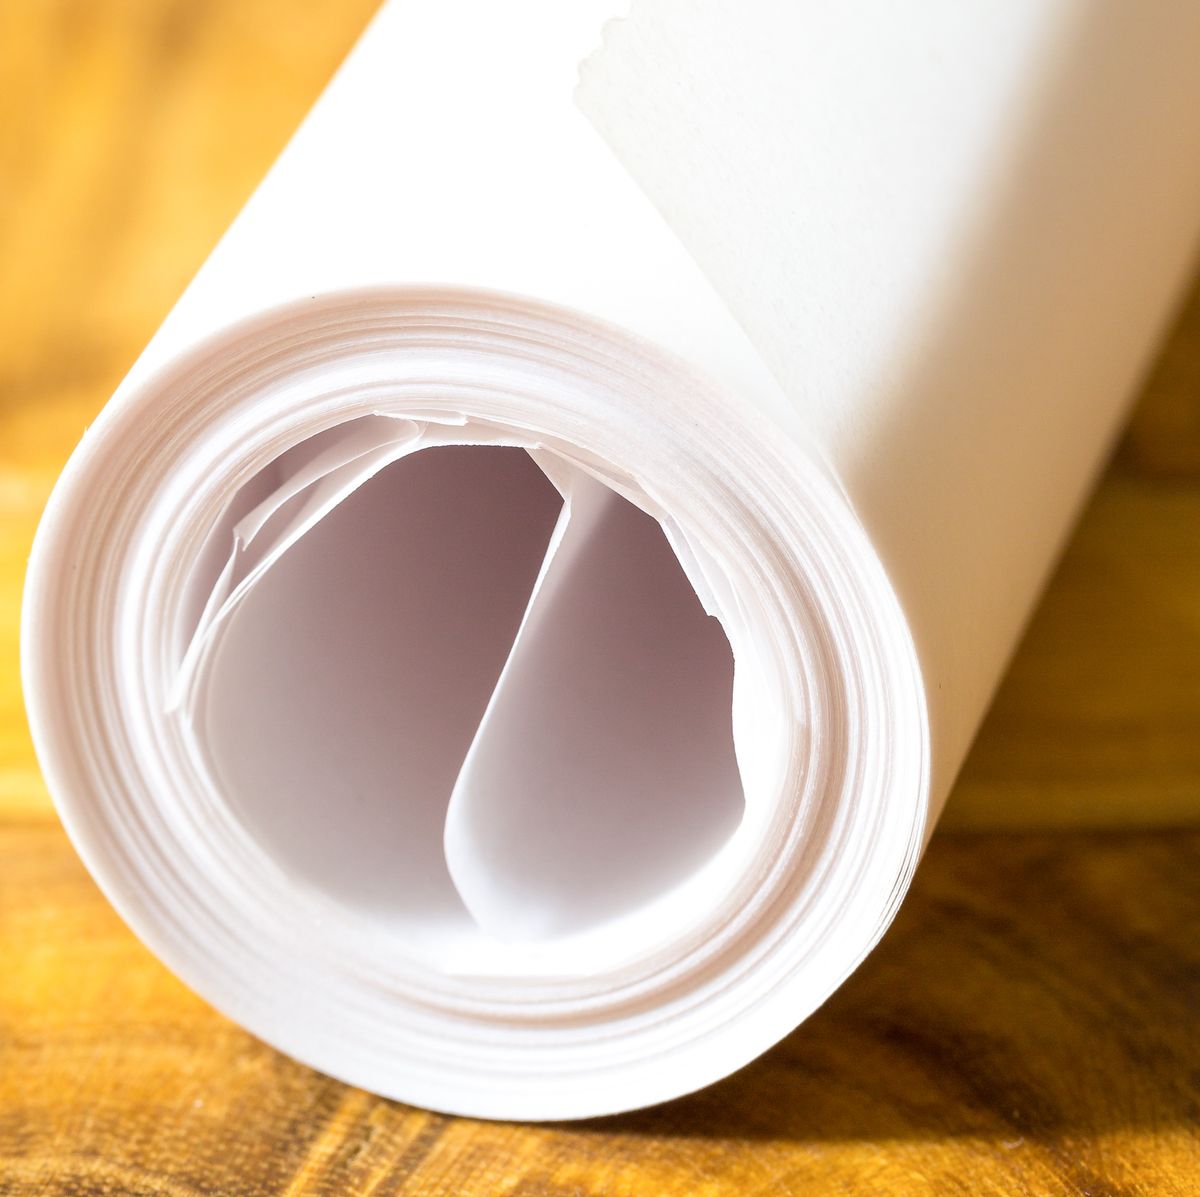 Parchment Paper at Whole Foods Market